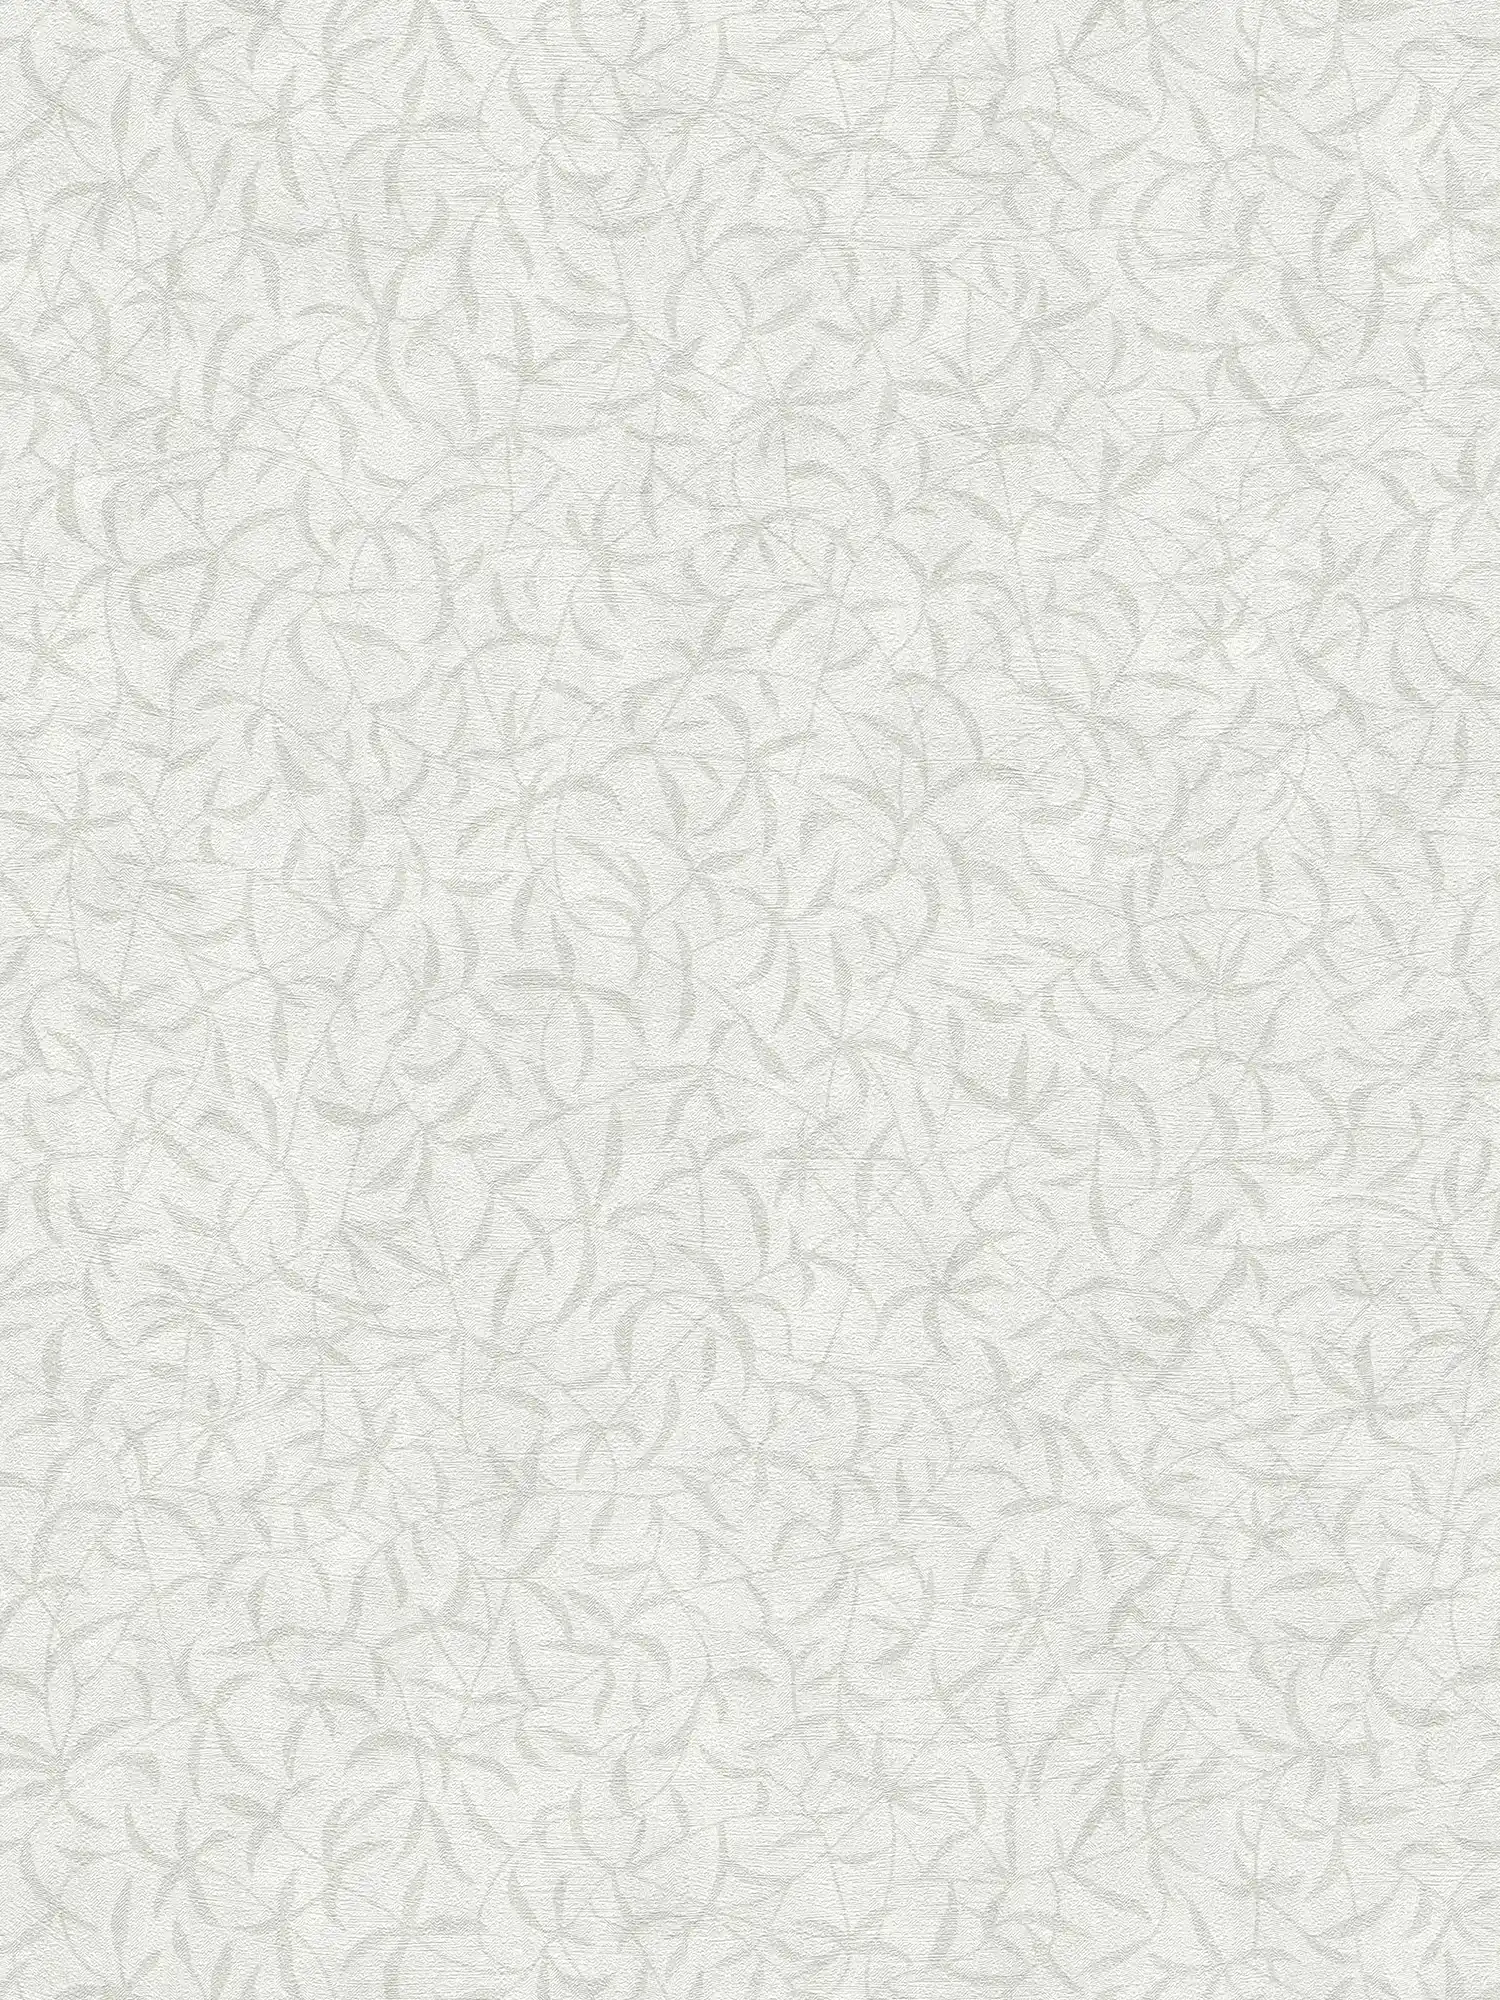 Carta da parati in tessuto non tessuto rami floreali con struttura - bianco, grigio
